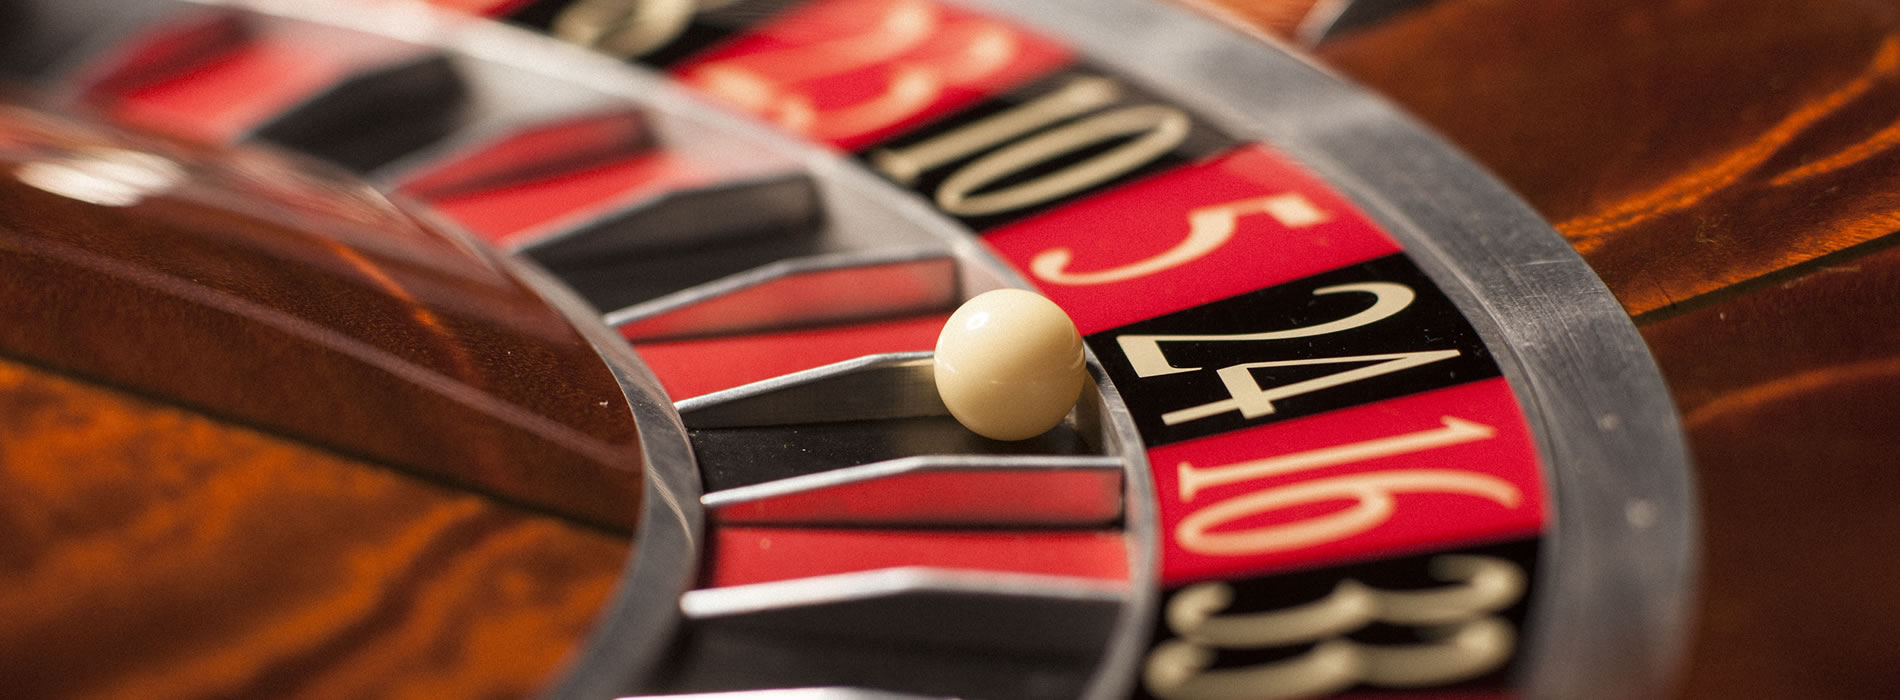 Les jeux casino en phase de devenir maitre du web